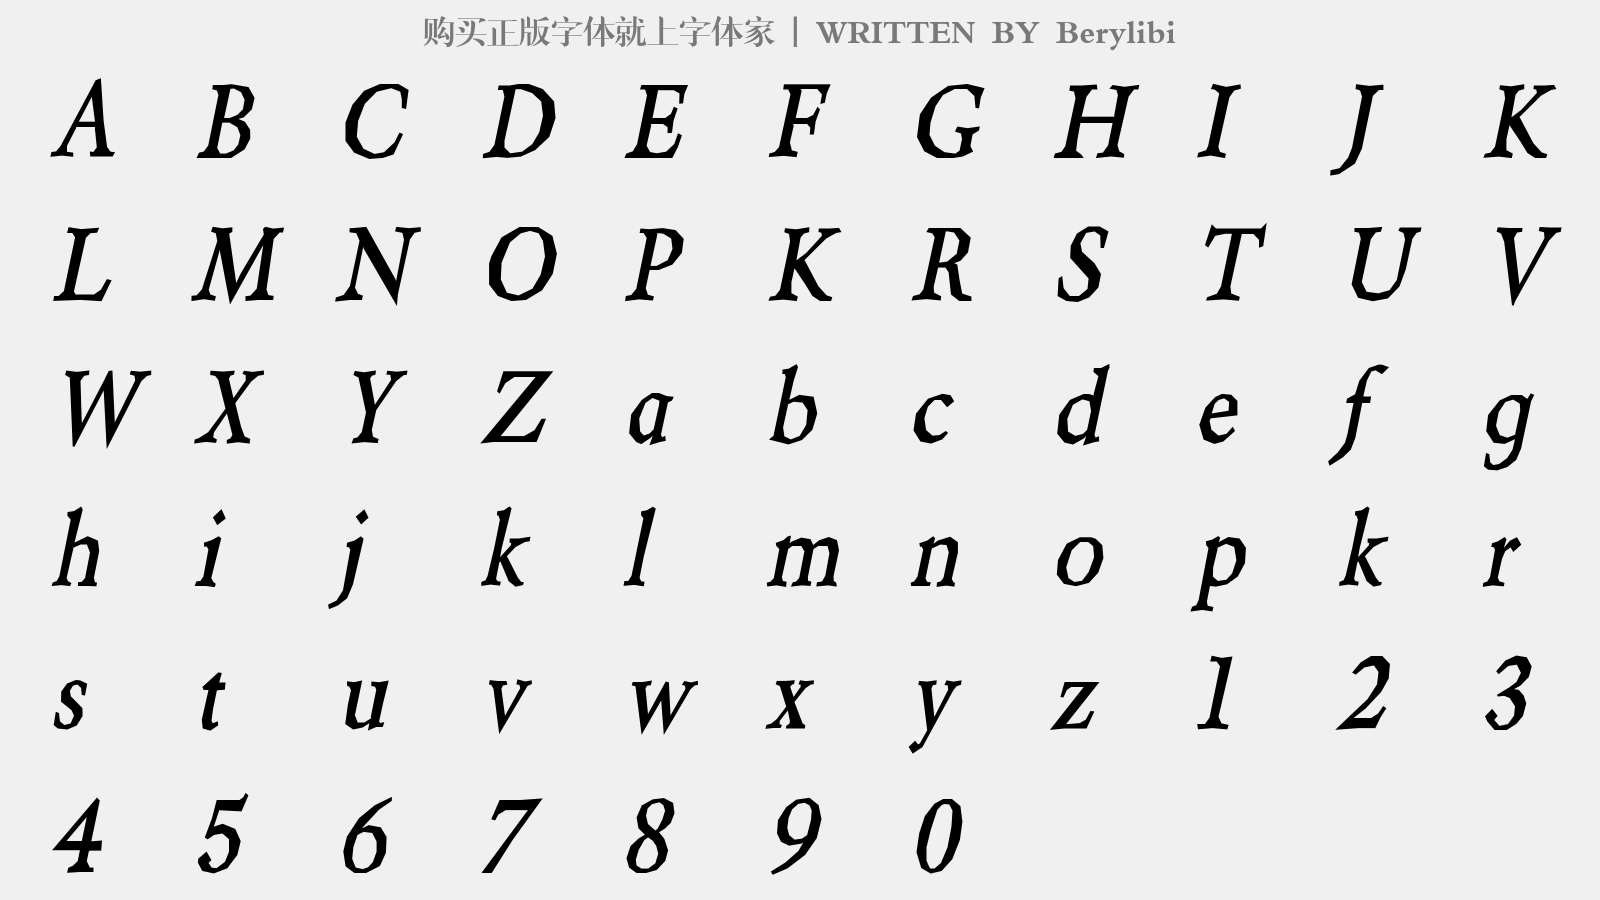 Berylibi - 大写字母/小写字母/数字